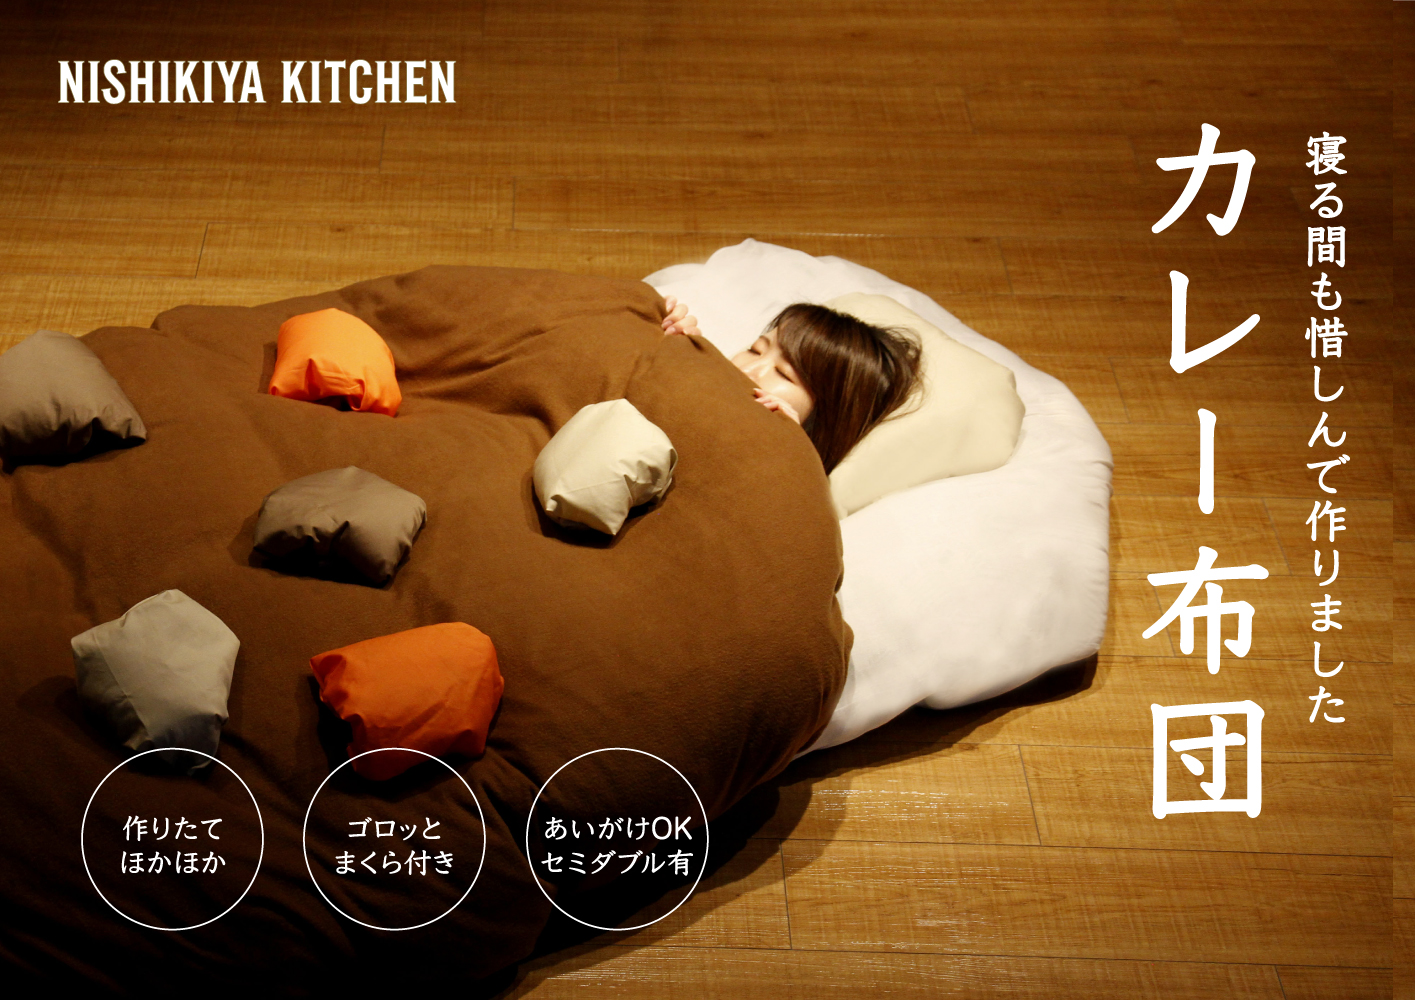 レトルト専門店 Nishikiya Kitchen カレー布団 新登場 エイプリルフールです 株式会社にしき食品のプレスリリース